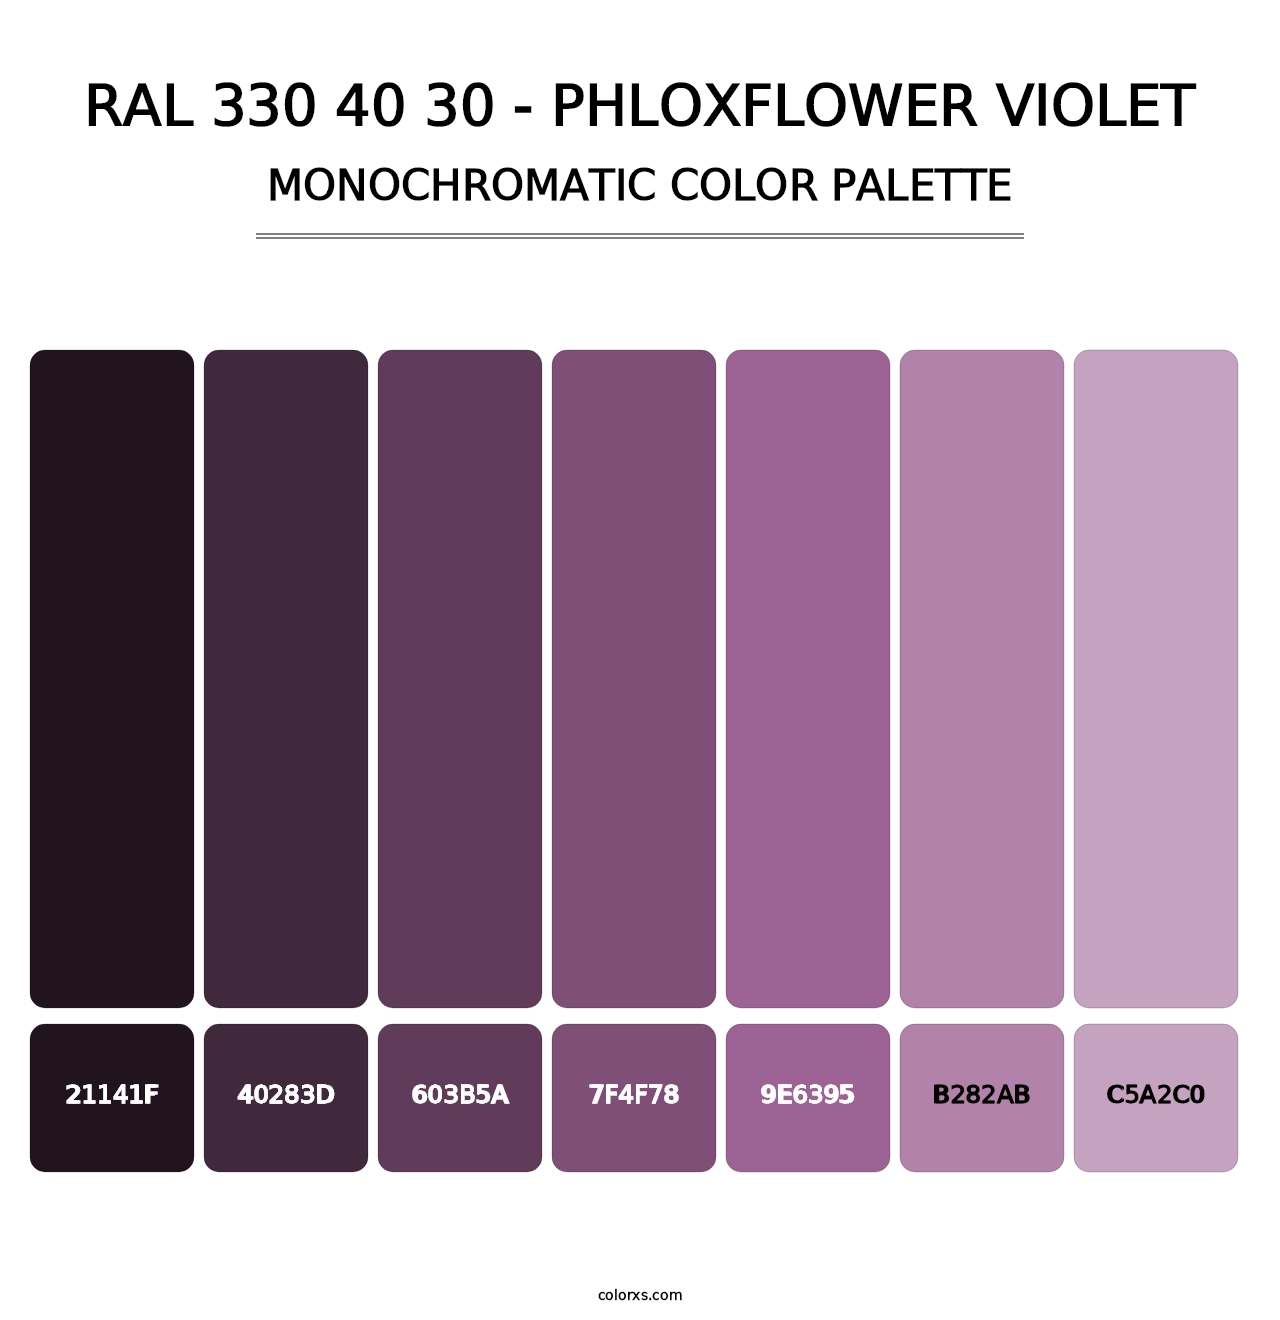 RAL 330 40 30 - Phloxflower Violet - Monochromatic Color Palette